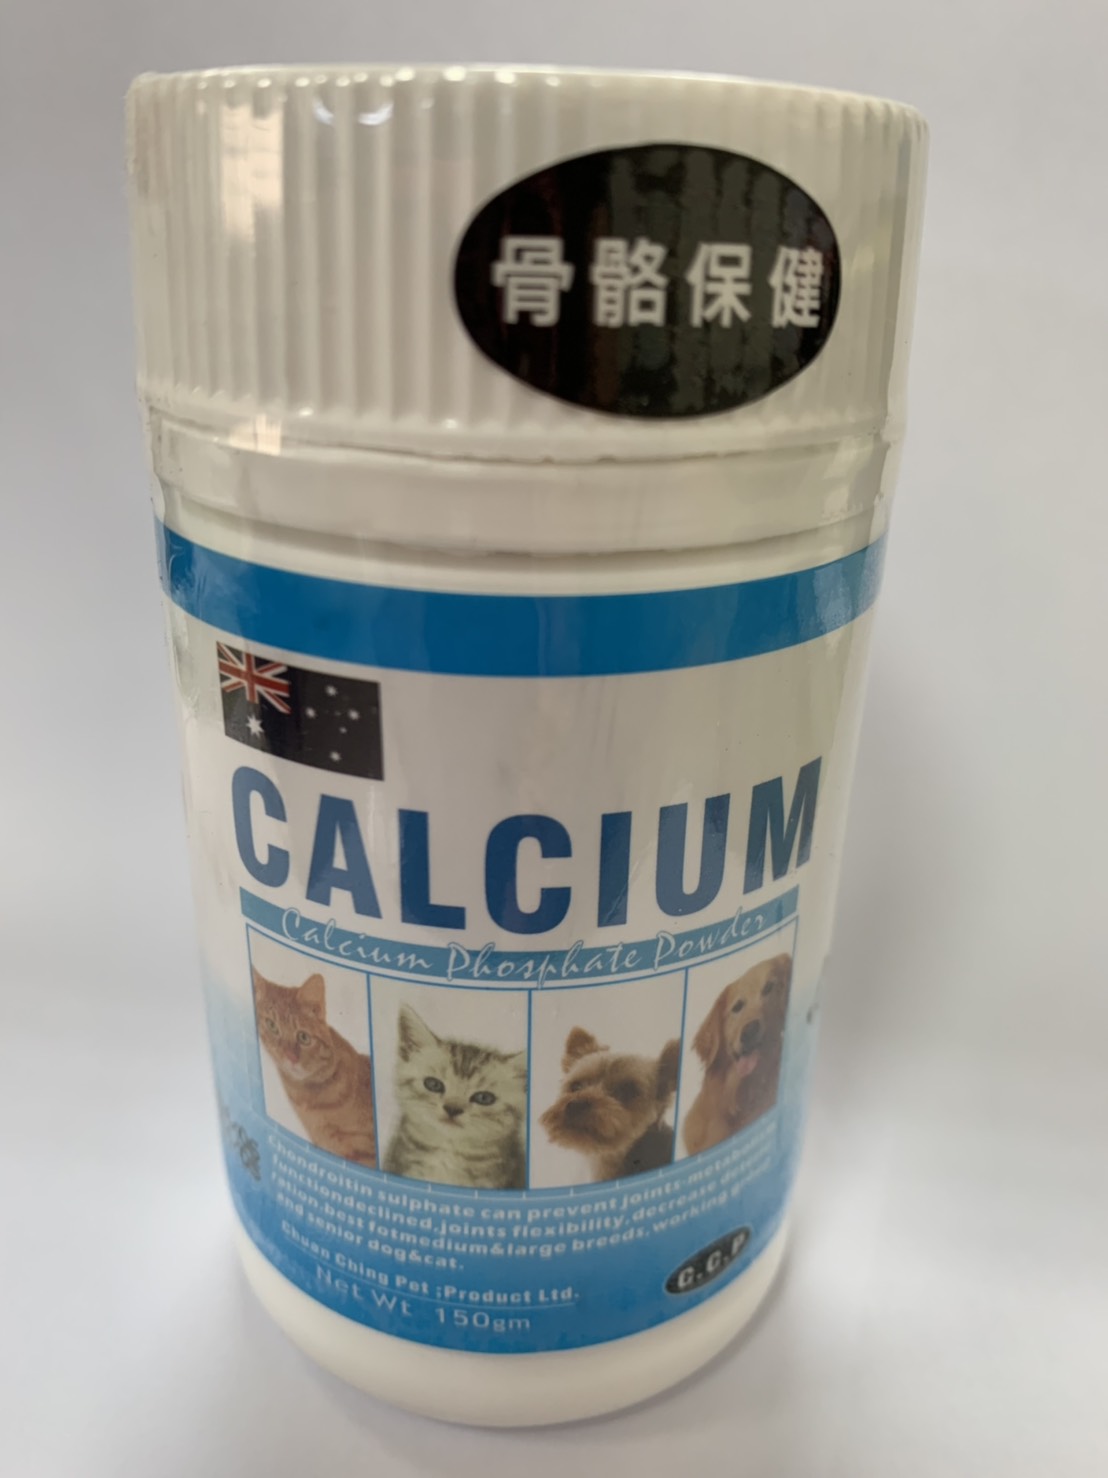 C.C.P骨骼保健鈣磷粉
C.C.P Calcium Phosphate Powder